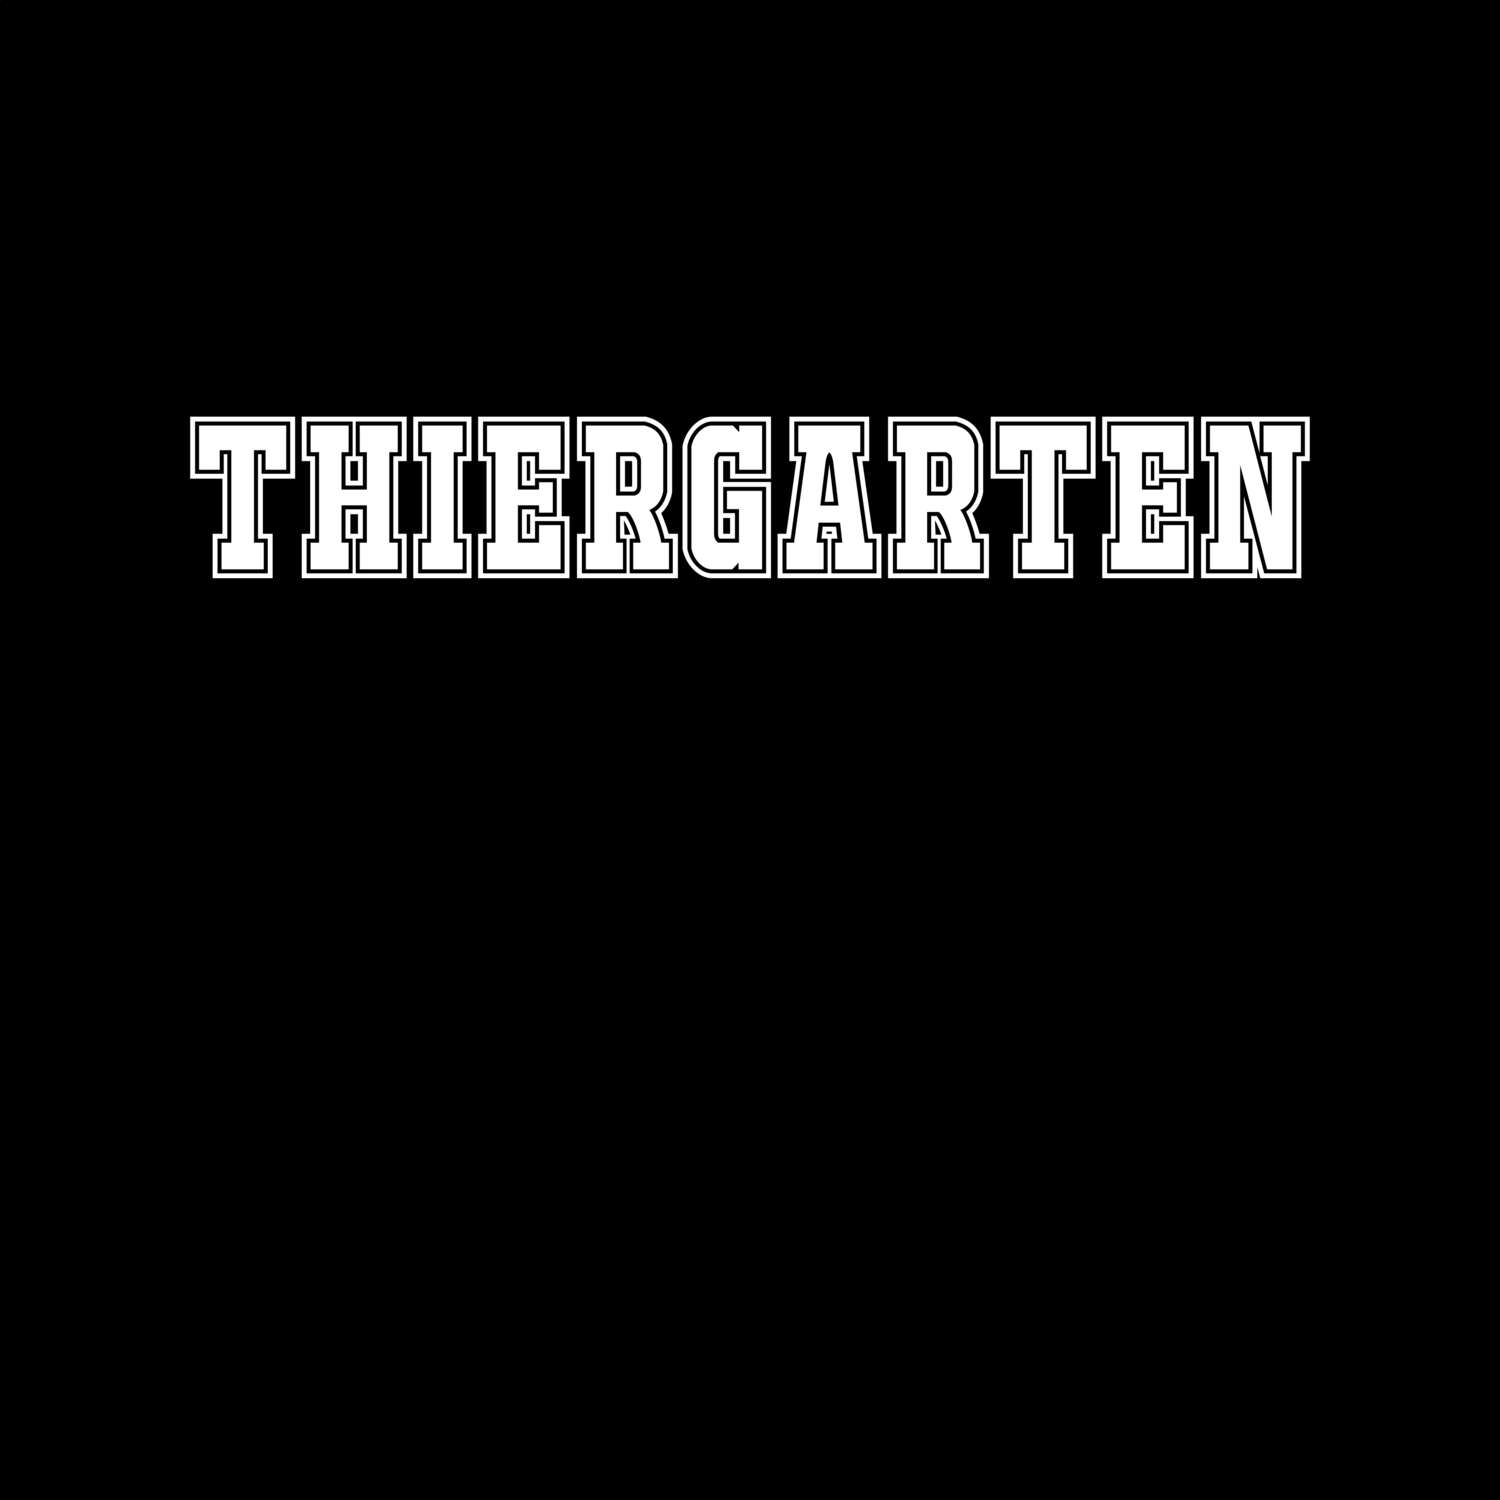 Thiergarten T-Shirt »Classic«